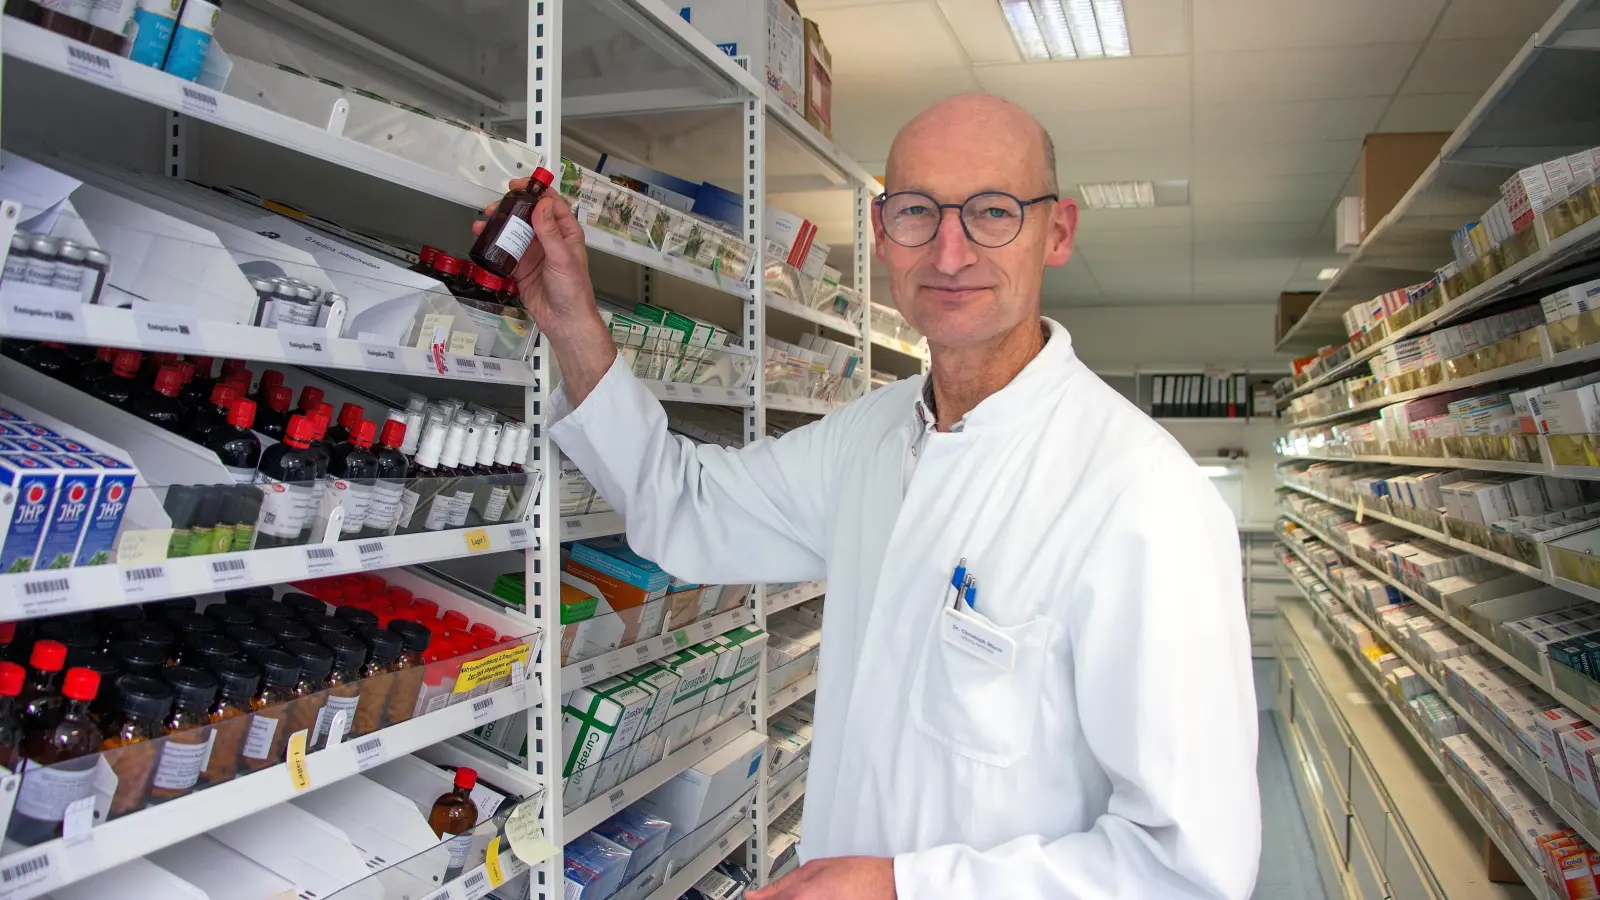 Dr. Christoph Sturm klärt zum Welttag der Patientensicherheit über die richtige Einnahme von Medikamenten auf. (Foto: Helios)